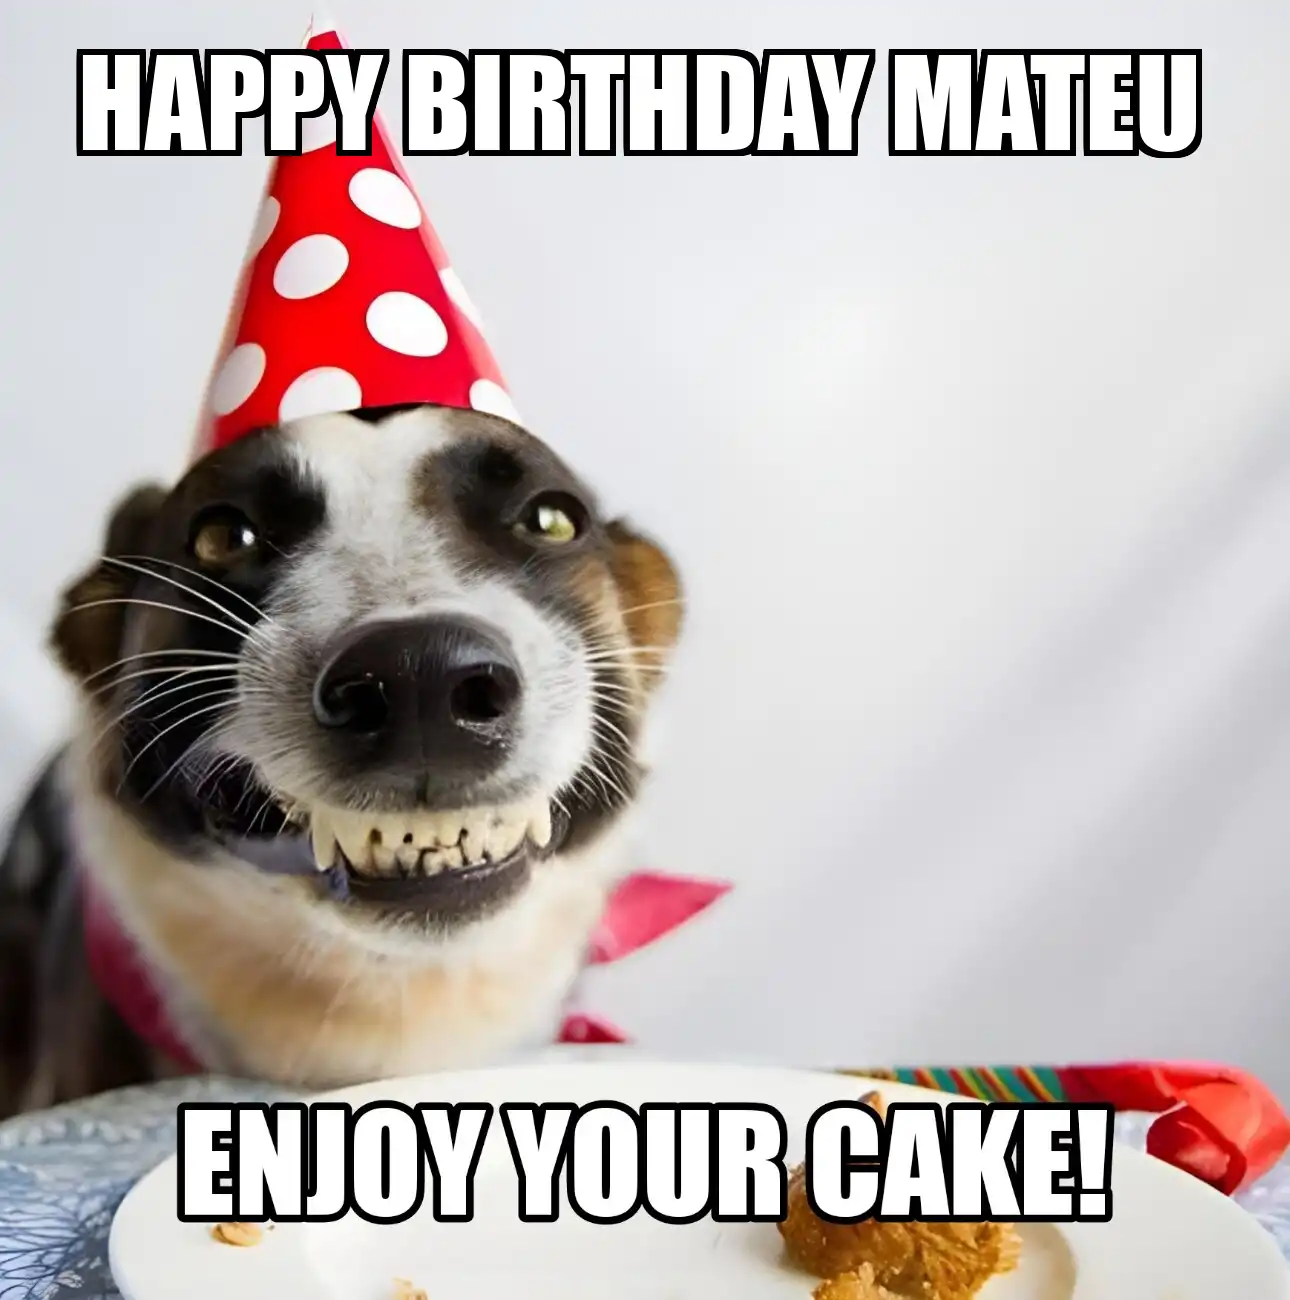 Happy Birthday Mateu Enjoy Your Cake Dog Meme